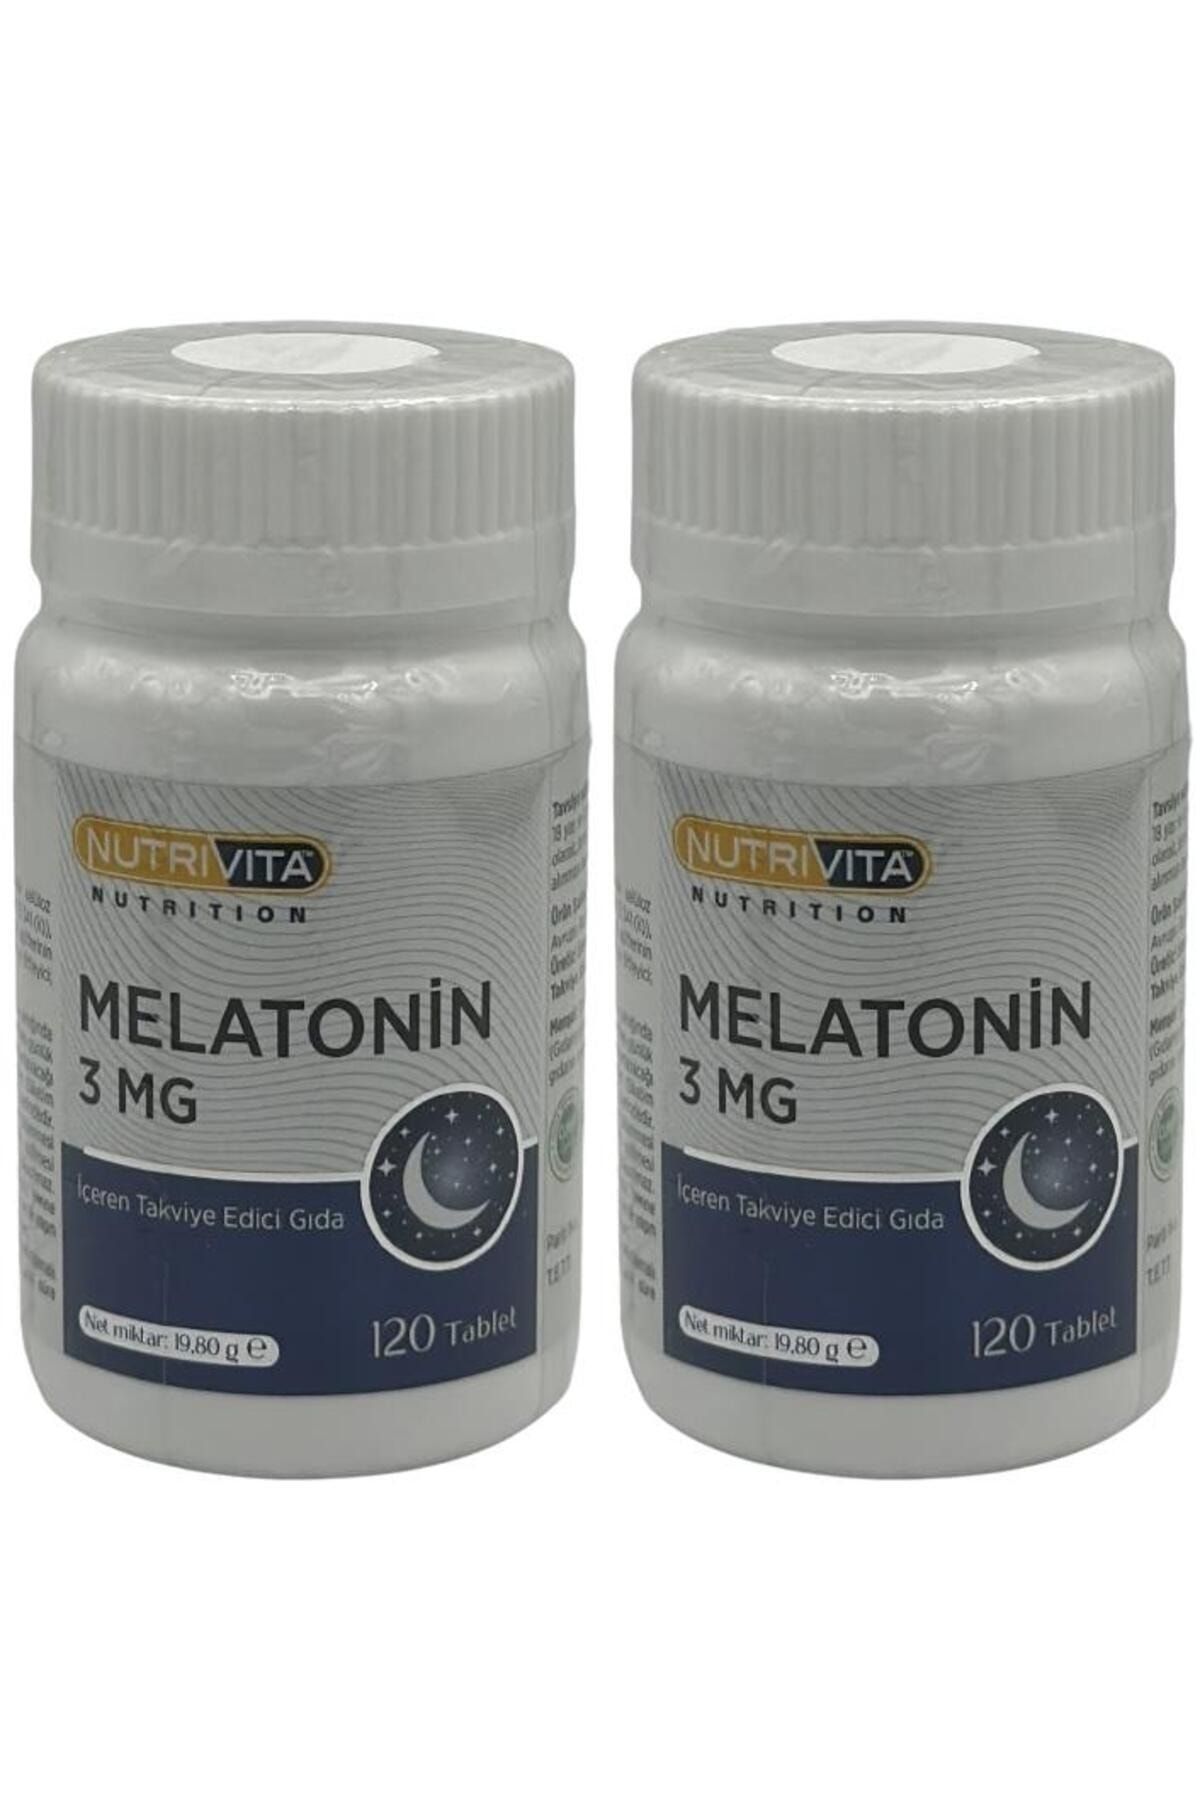 Nutrivita Nutrition Melatonin 3 Mg 2x120 Tablet